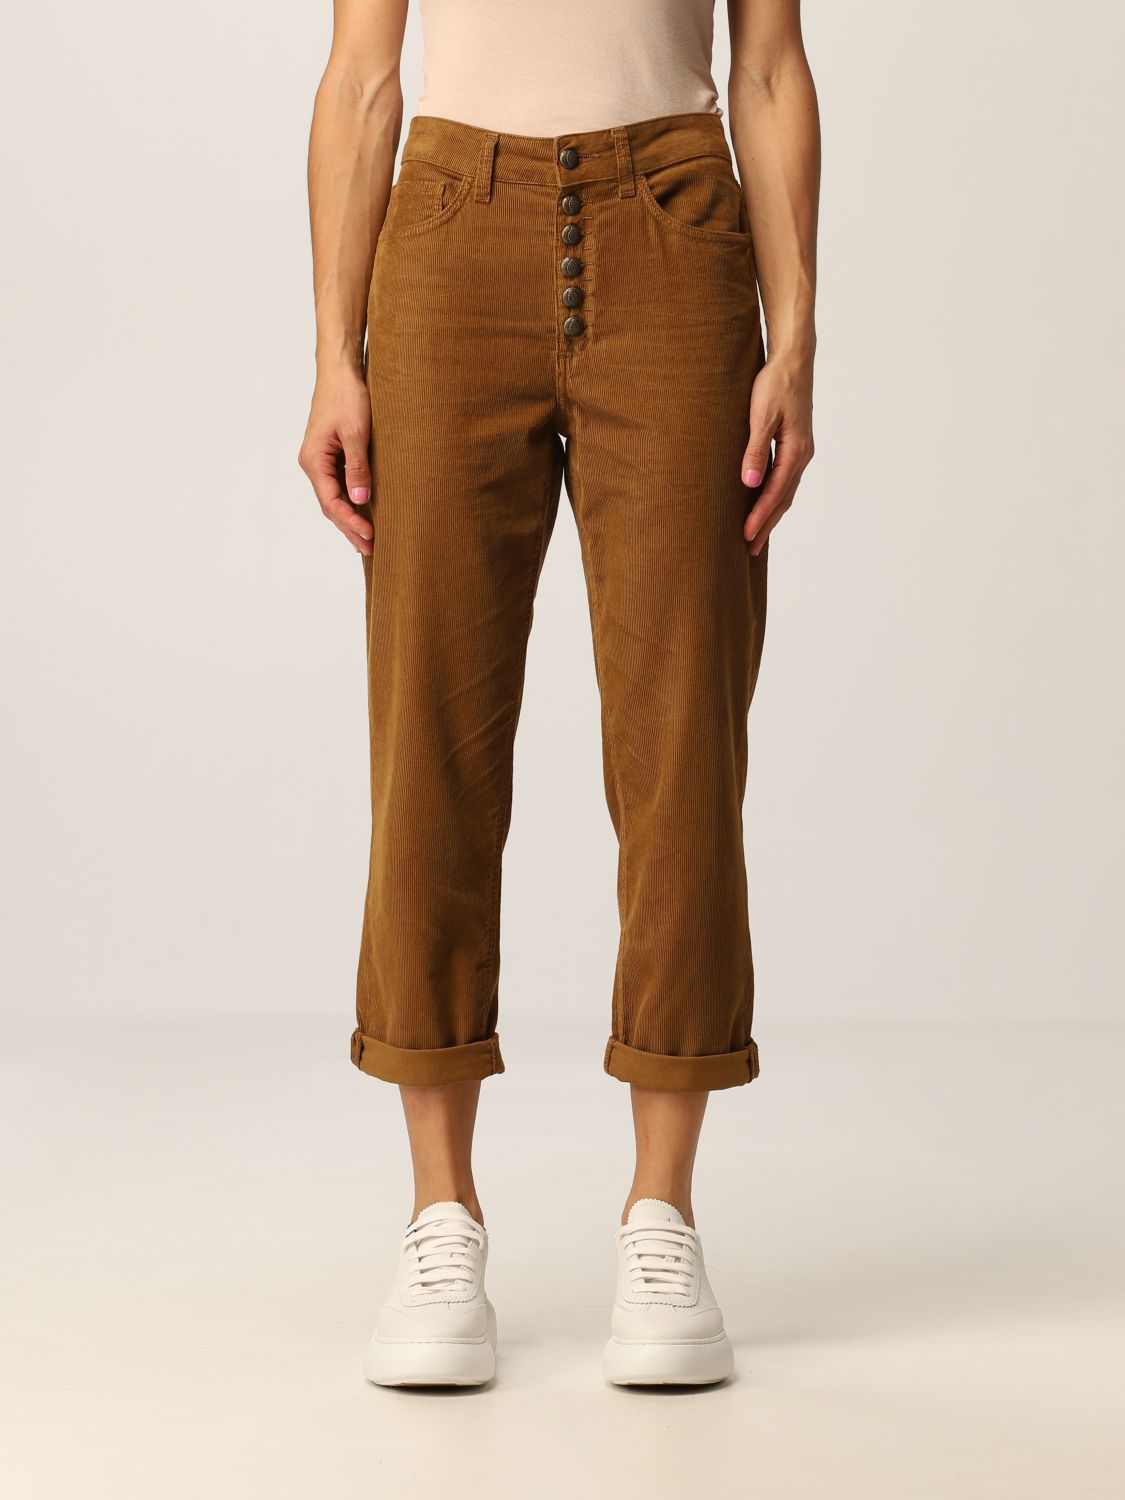 Pantalone in velluto con logo Giglio.com Donna Abbigliamento Pantaloni e jeans Pantaloni Pantaloni in velluto 